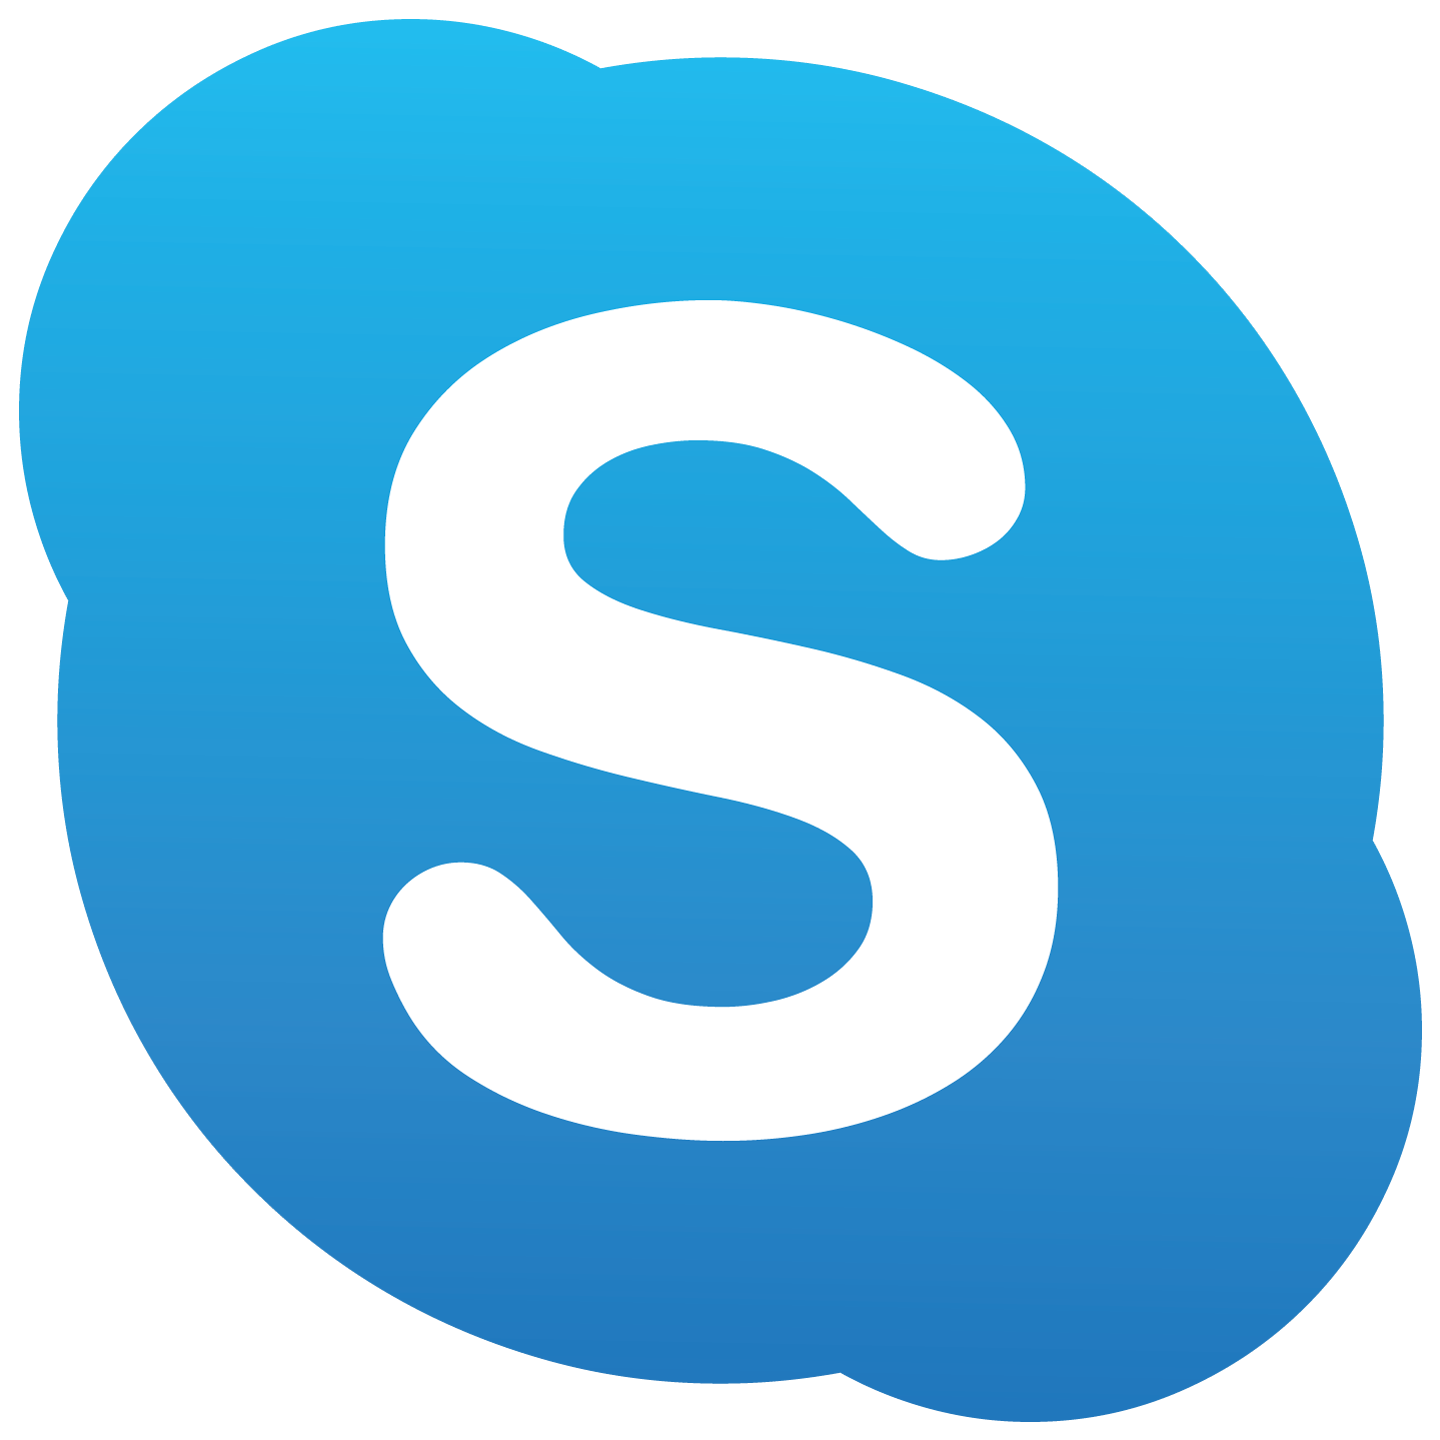 skype logo 2 1 - Skype Logo